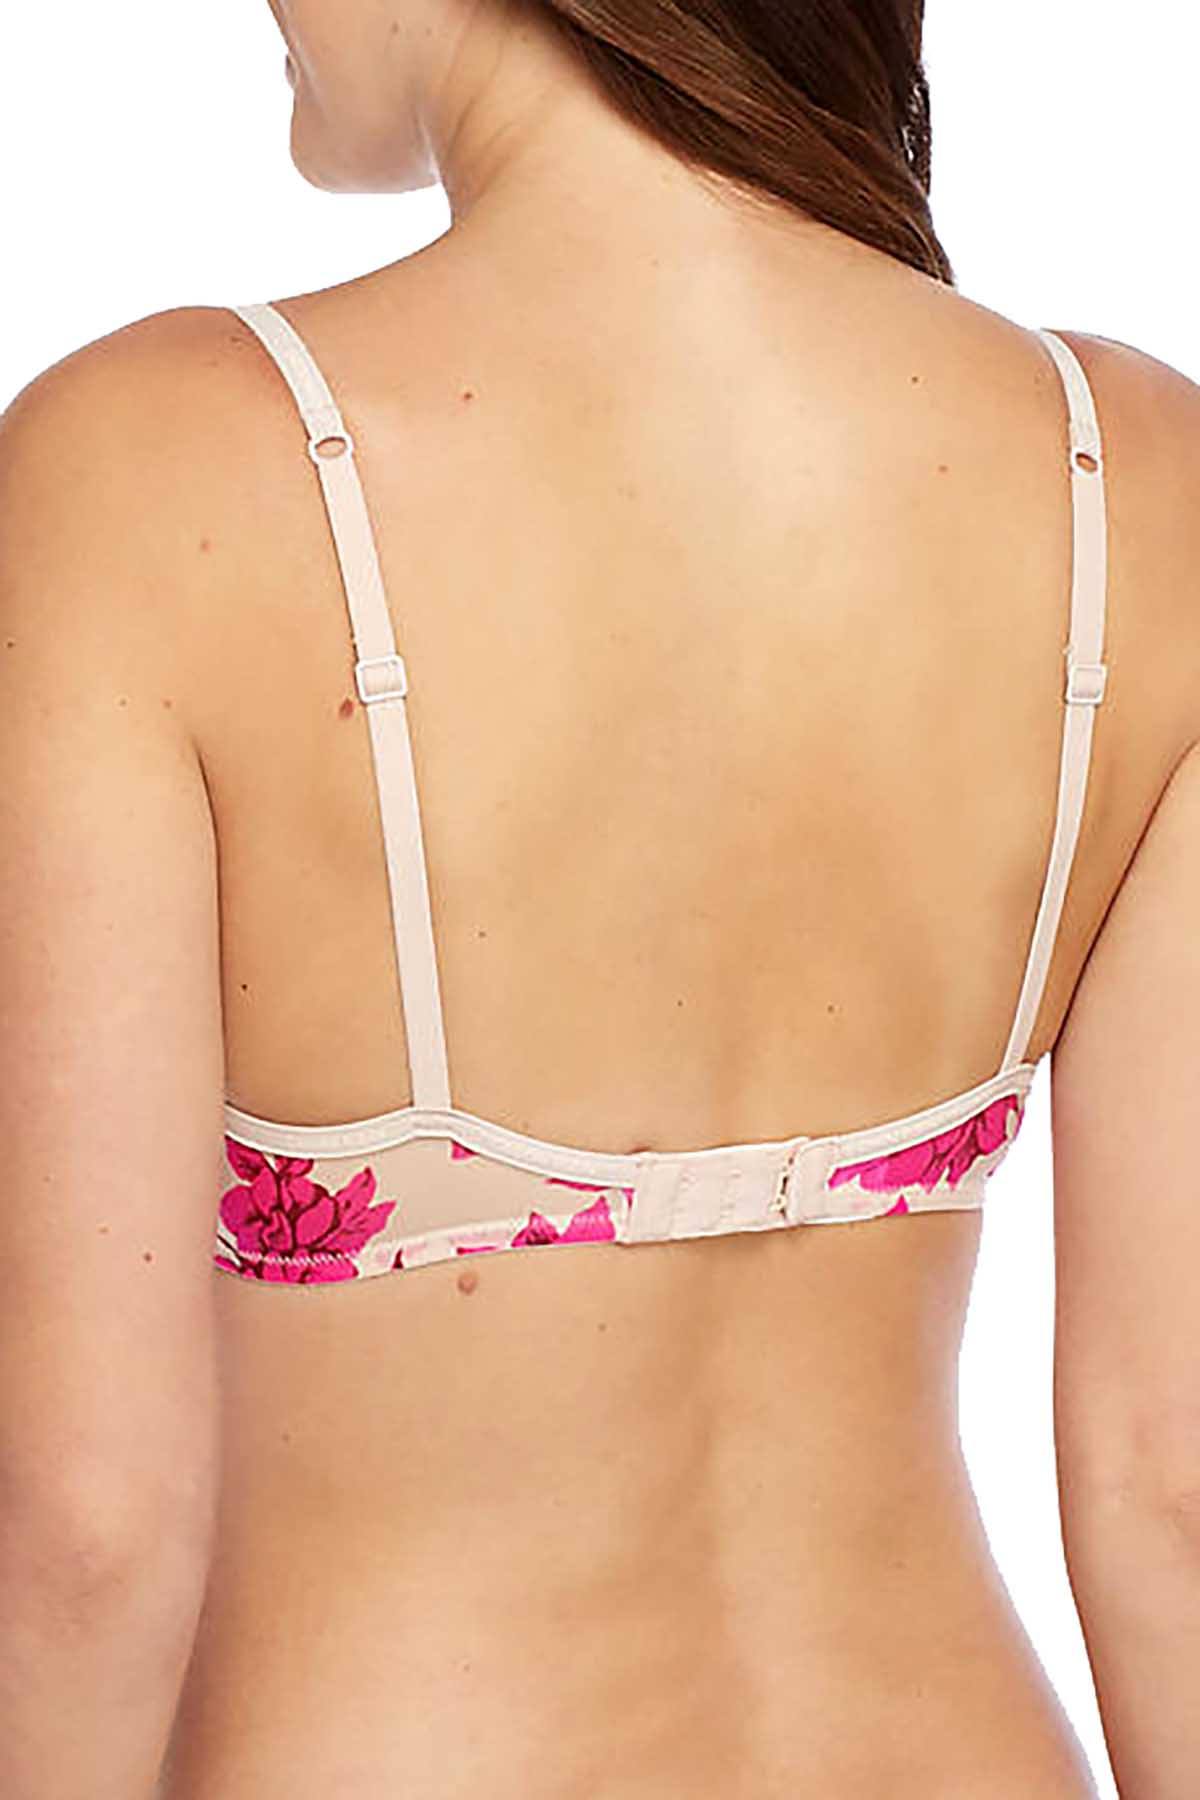 Calvin Klein, Intimates & Sleepwear, Calvin Klein Sheer Marquisette  Underwire Unlined Demi Bra Pink 34a New